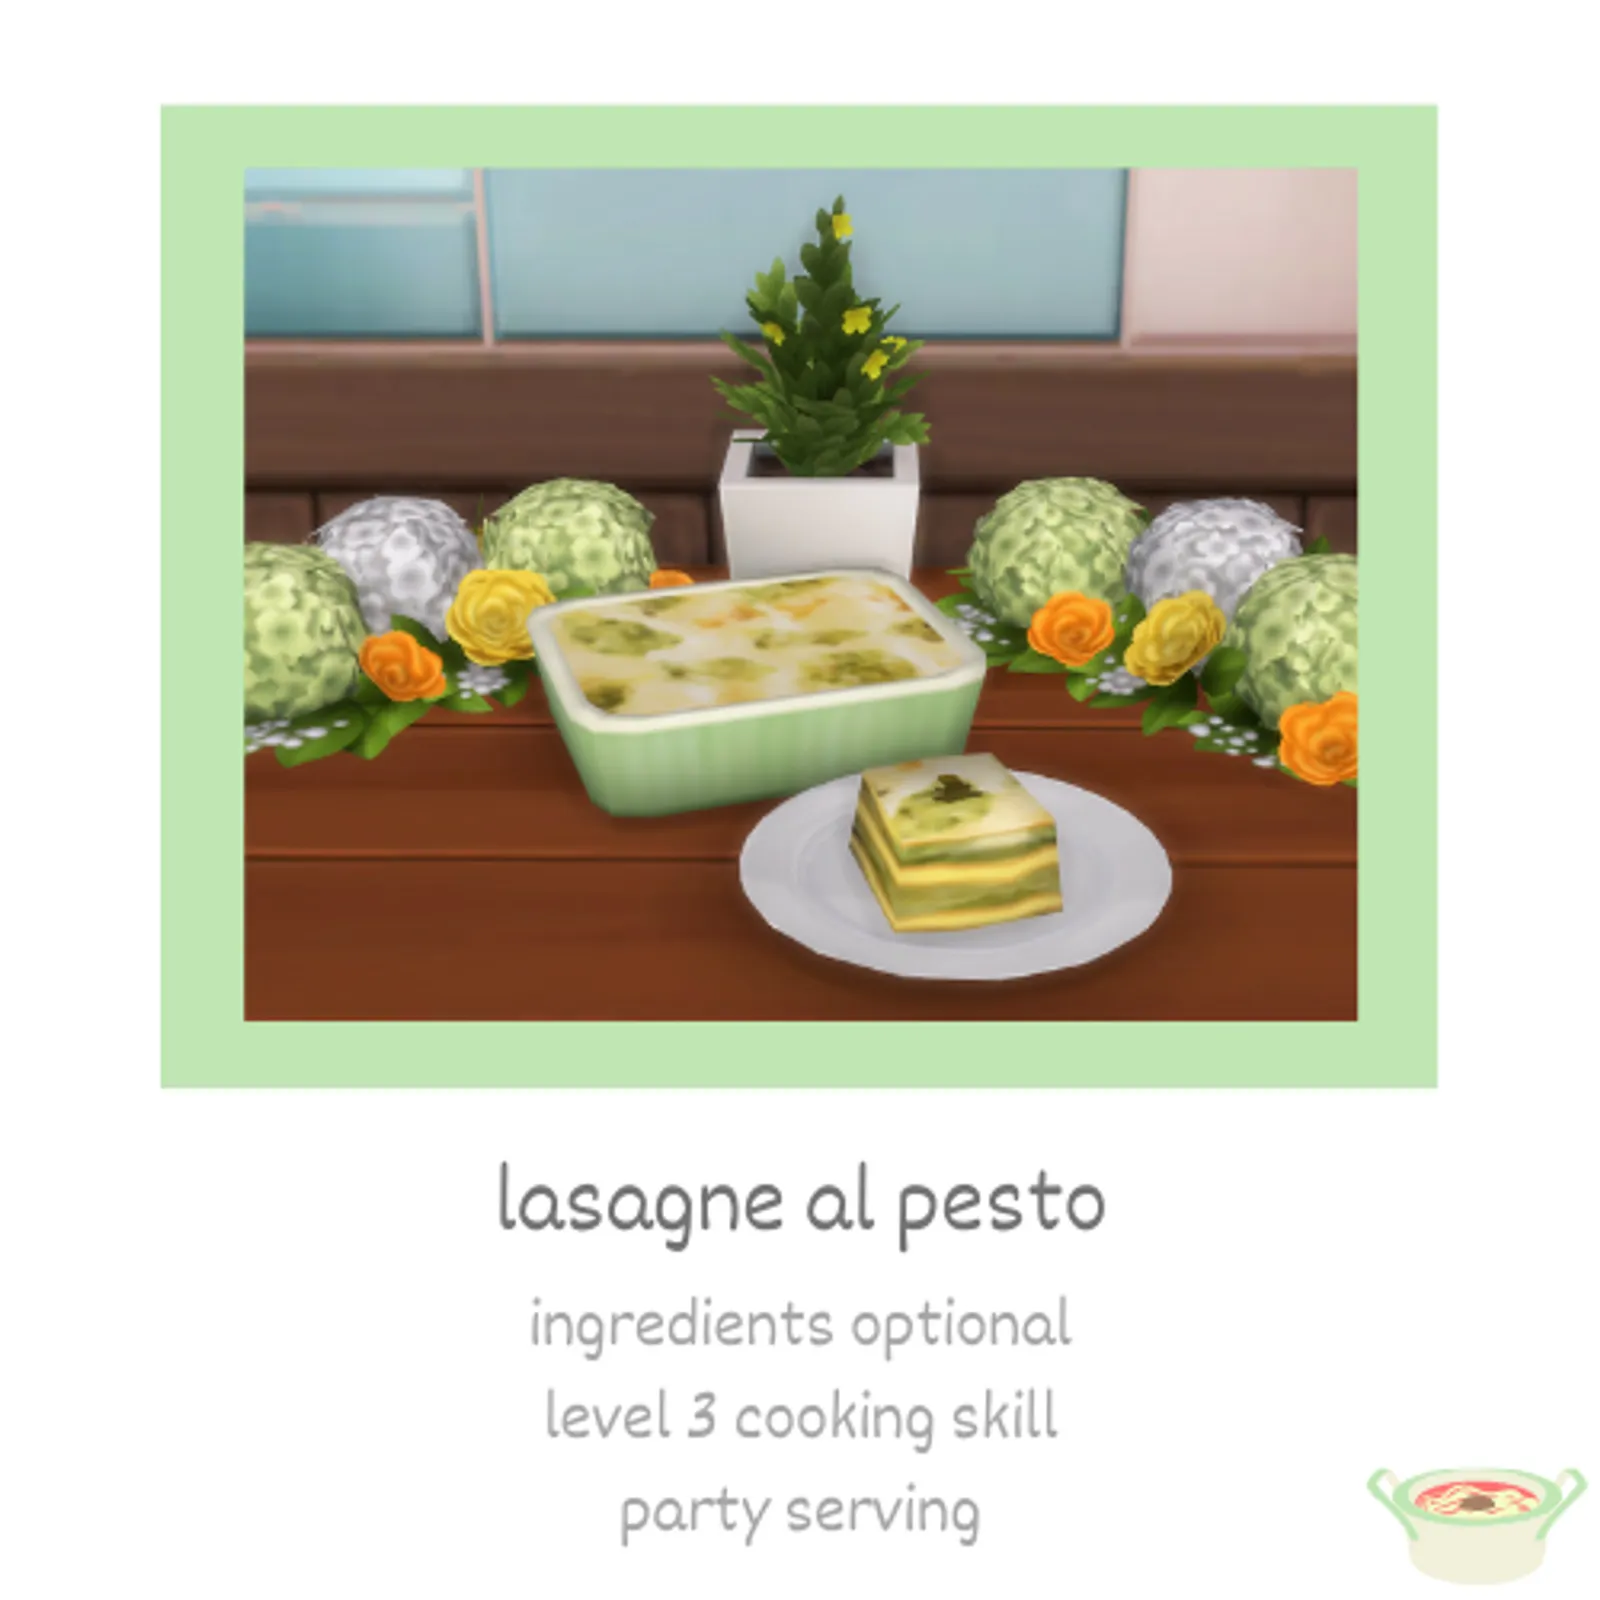 lasagne al pesto